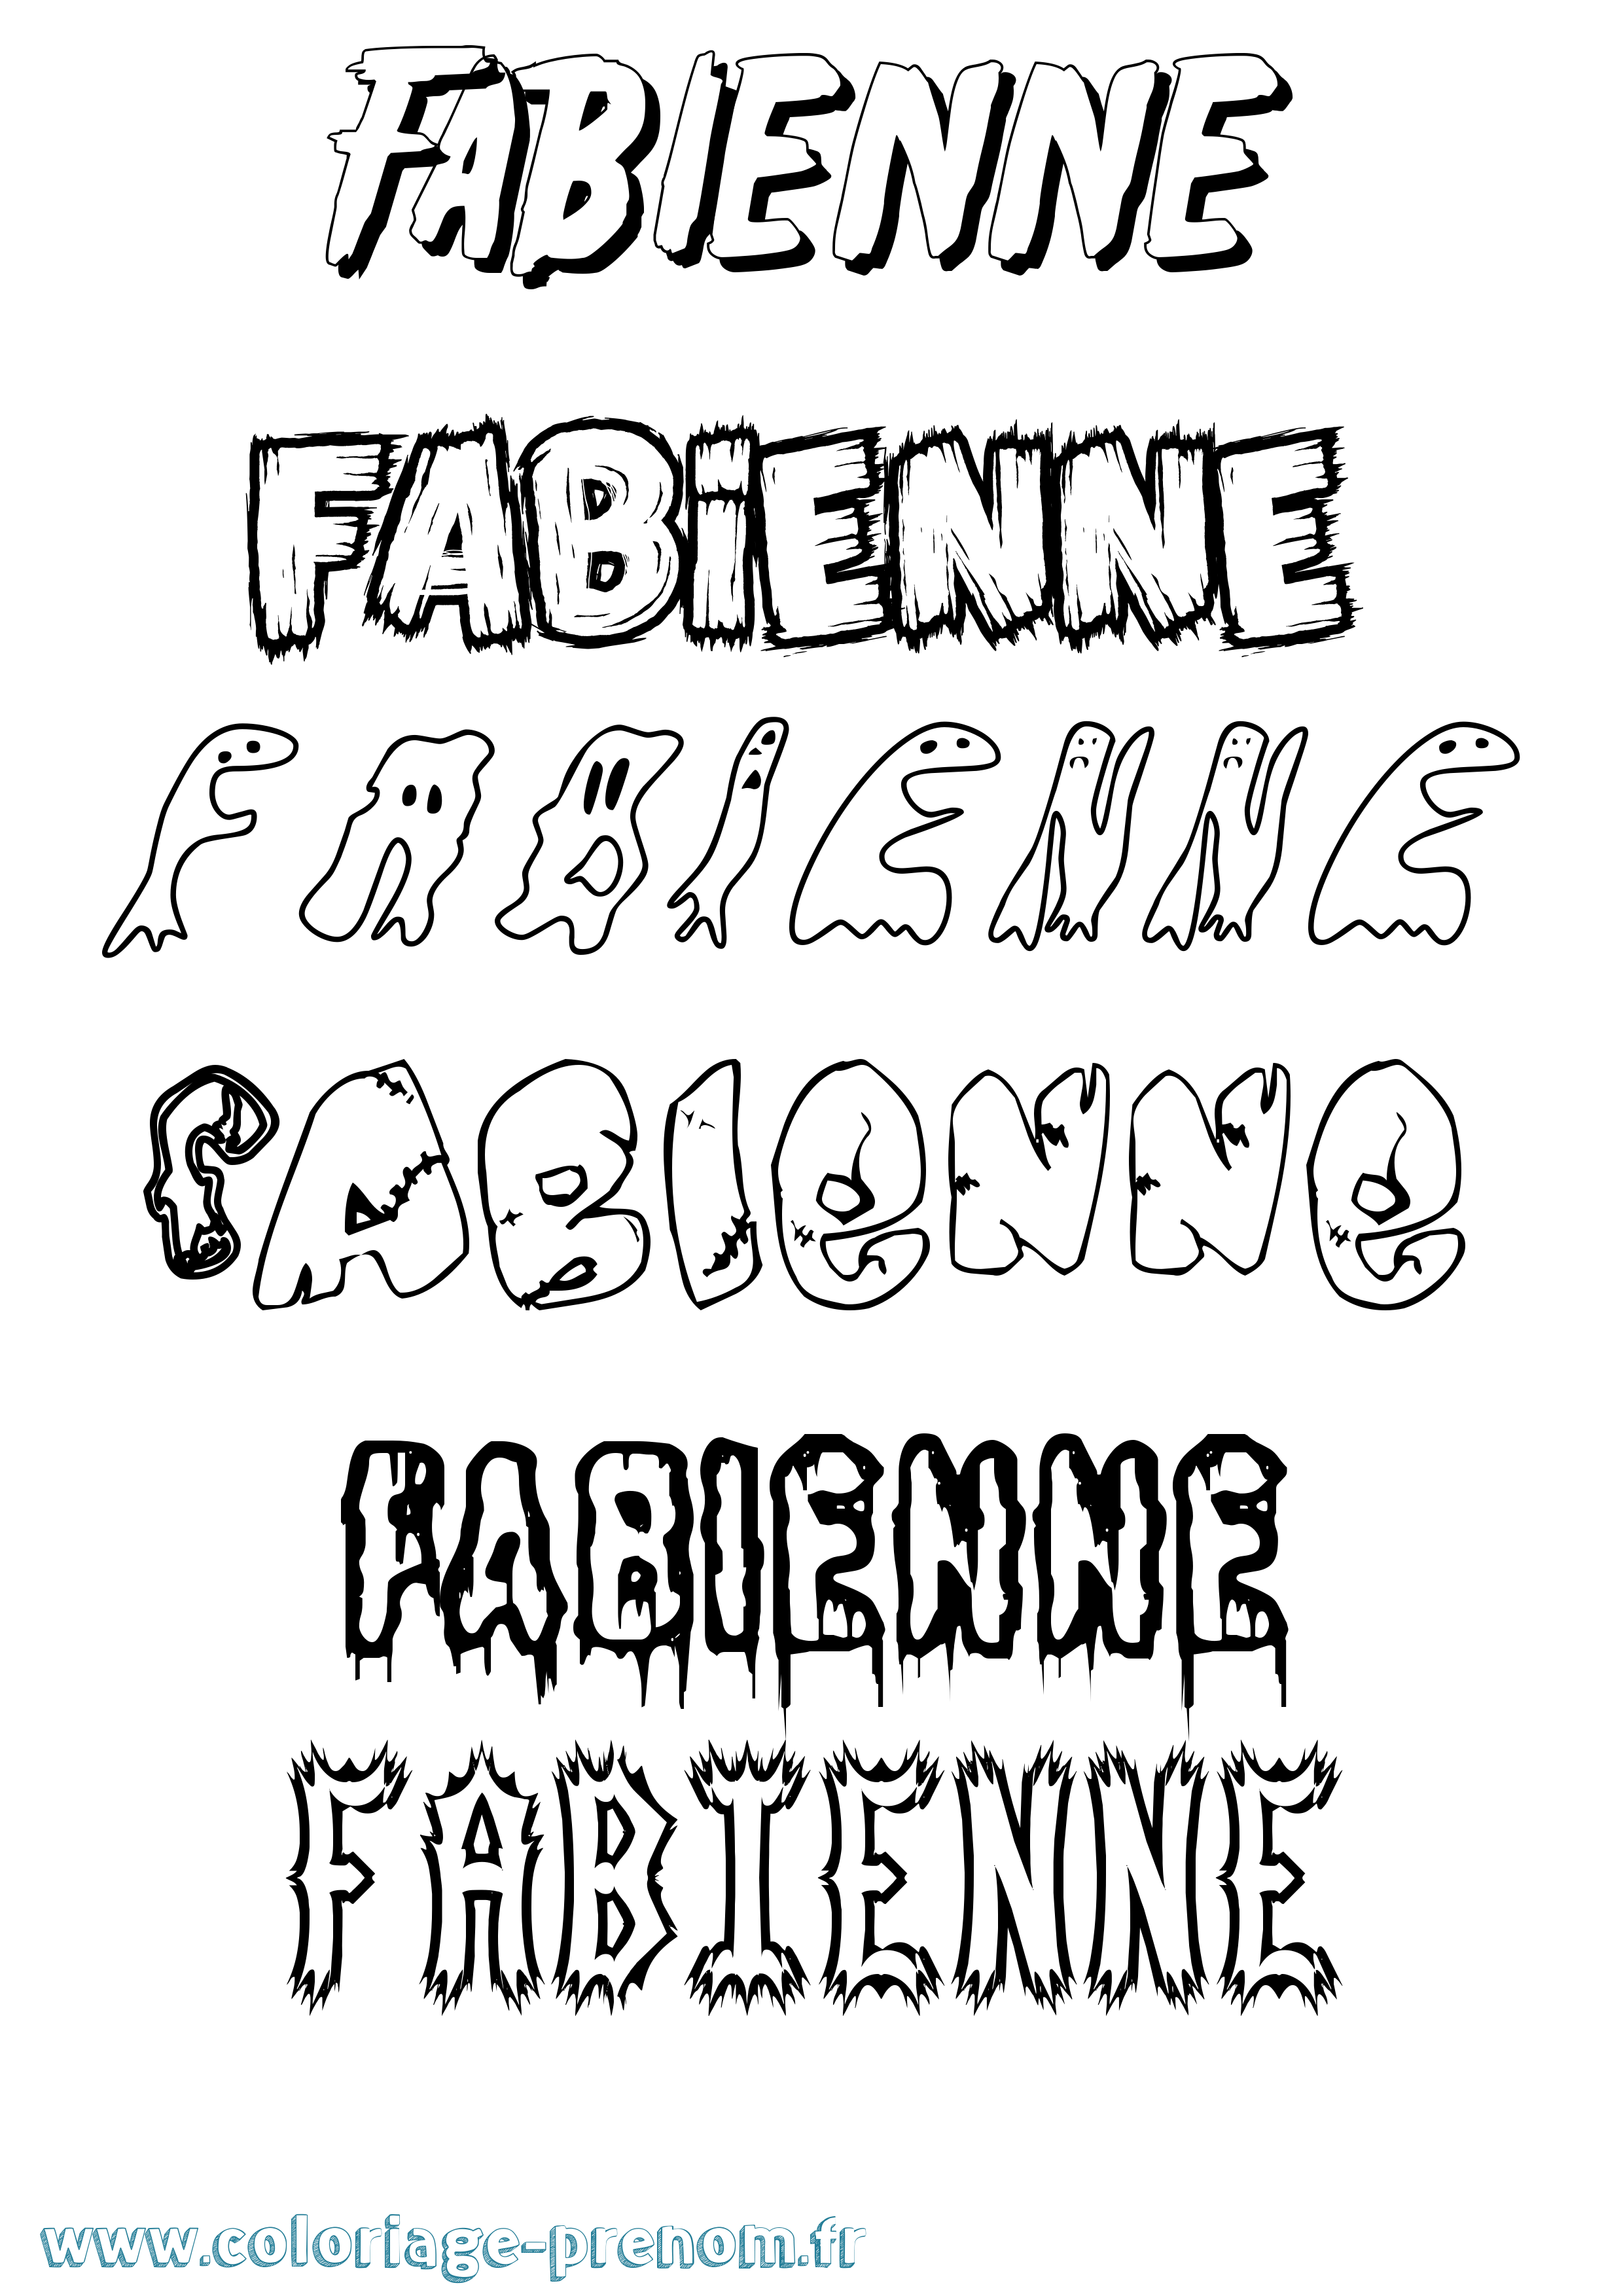 Coloriage prénom Fabienne